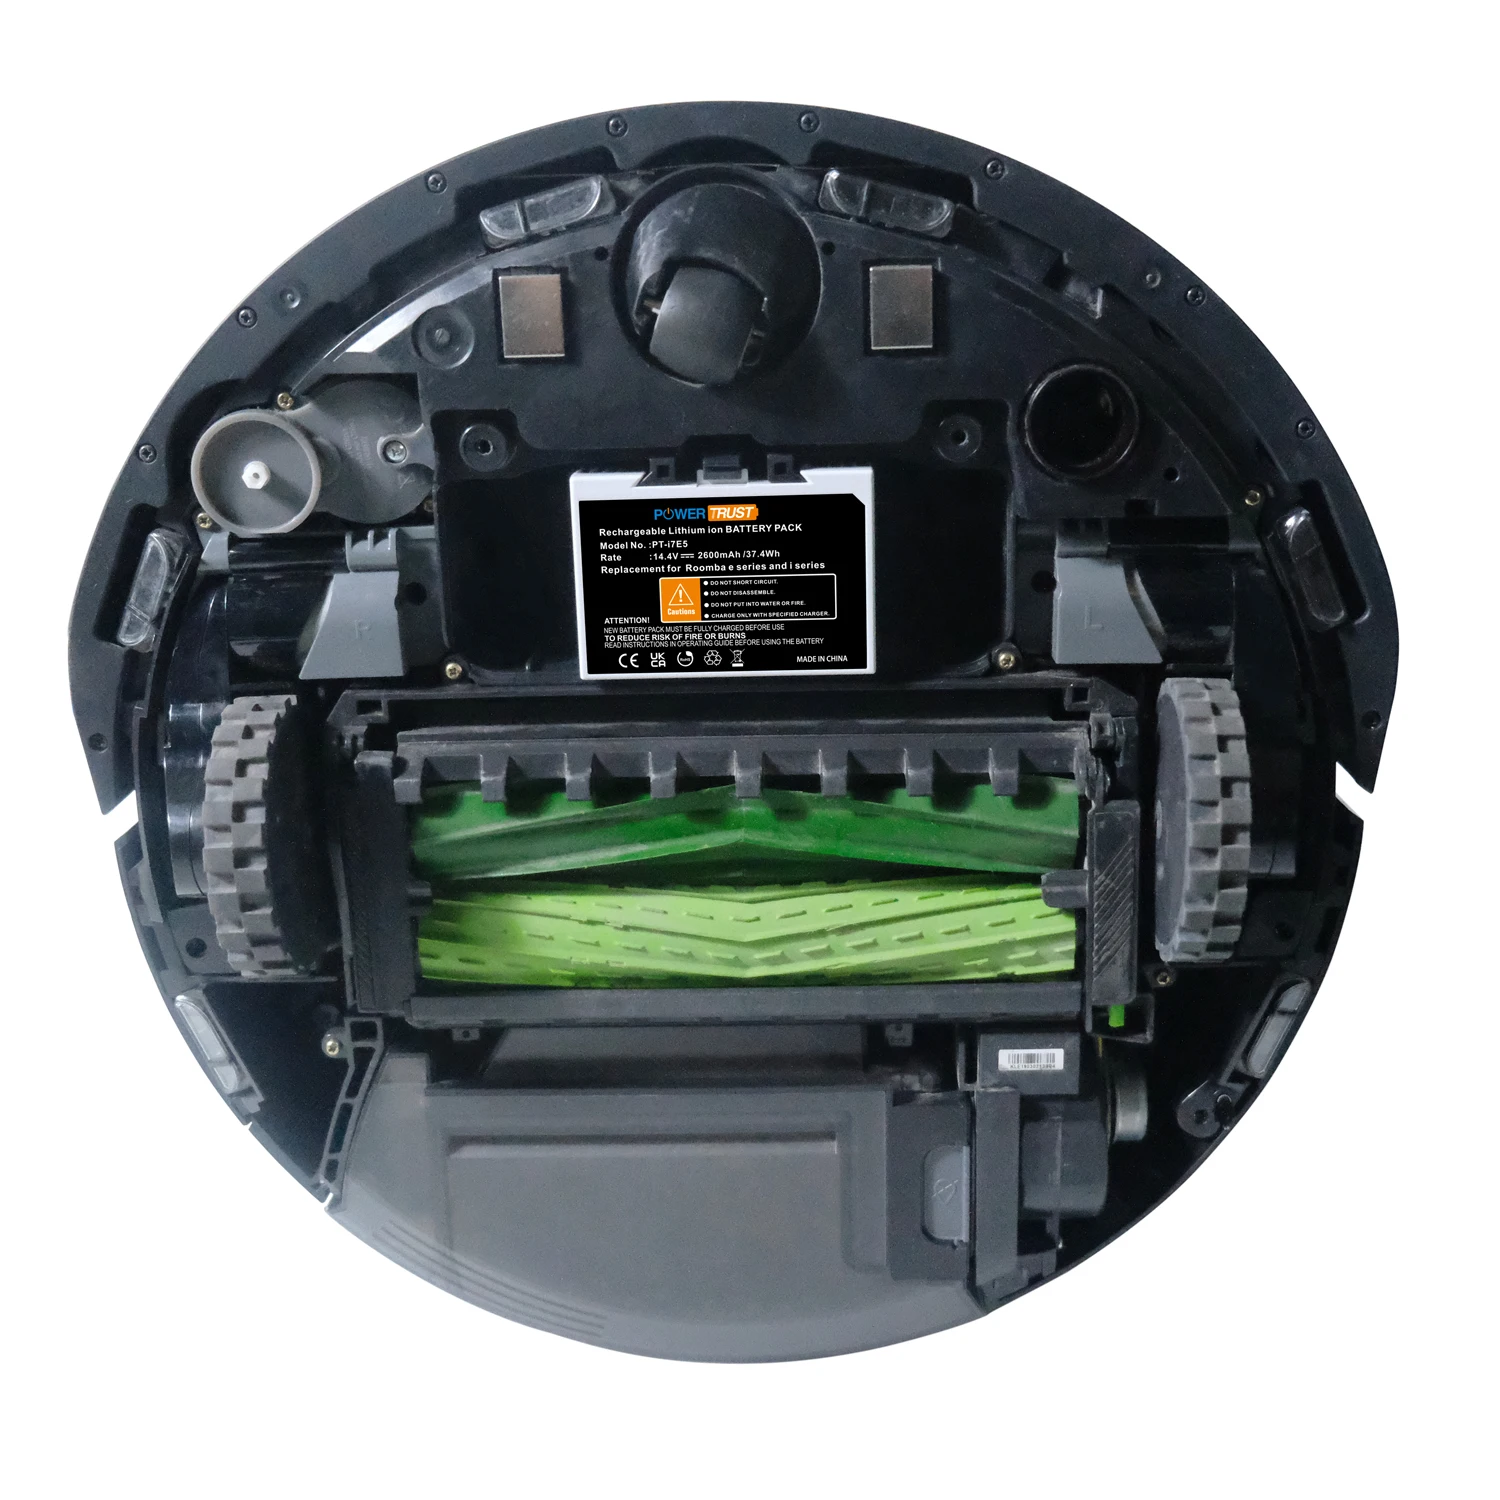 Vacuum Cleaner Batteries For Irobot Roomba E5 E6 I7 I7+ I8,7150 7550 E5150 E515020 E5154 E5158 And Abl-d1 Battery - Buy Vacuum Cleaner Batteries,14.4v Vacuum Battery,14.4v Ni-mh Battery Pack